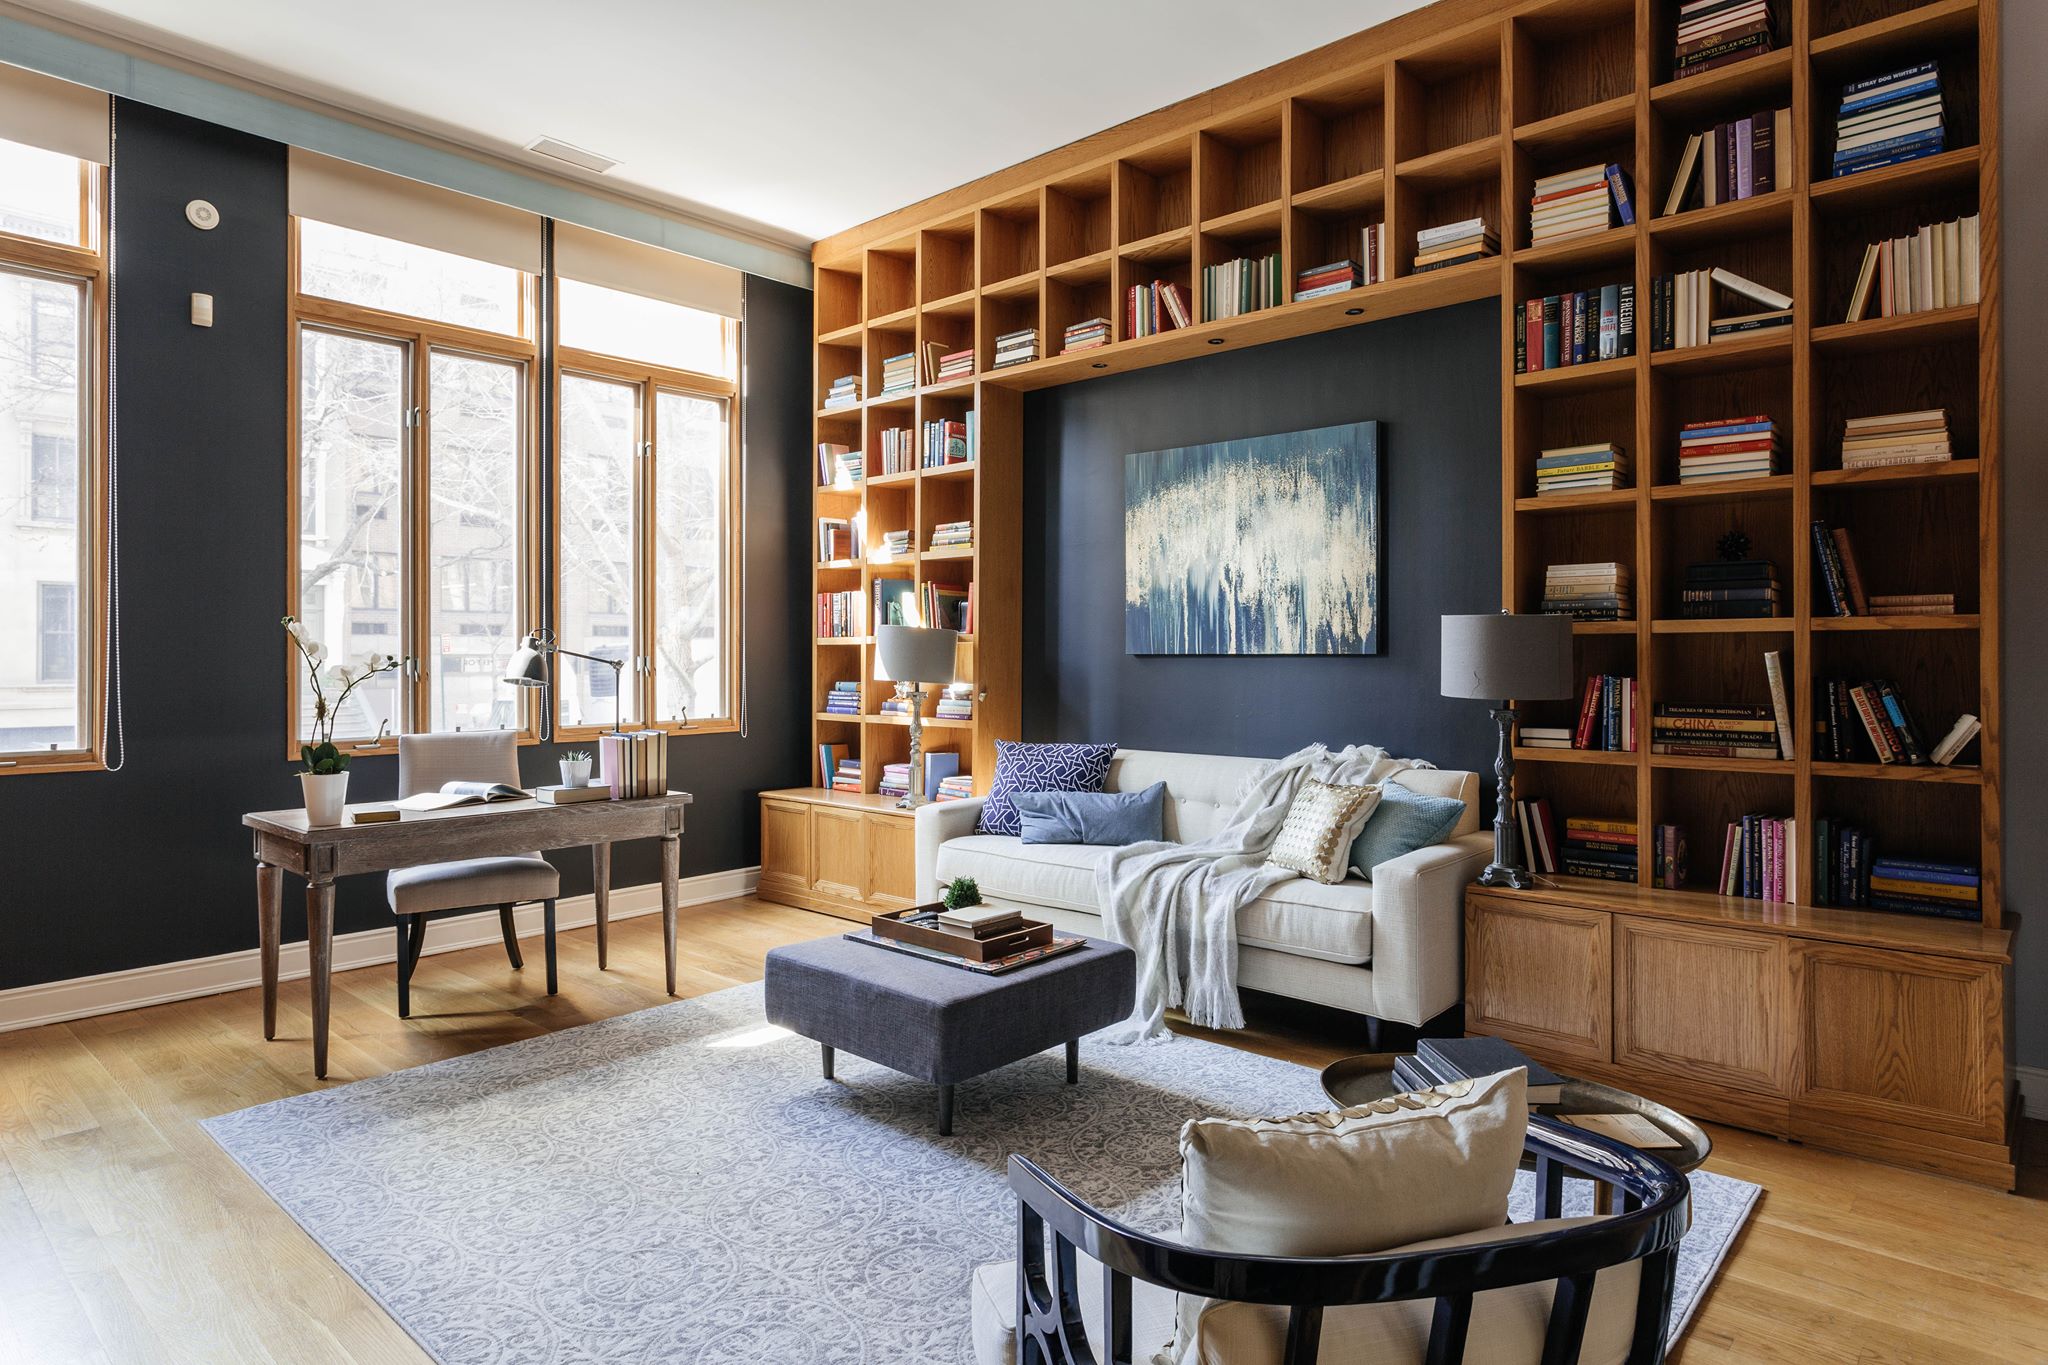 Living room designed, delivered, set up by Furnishr in one day